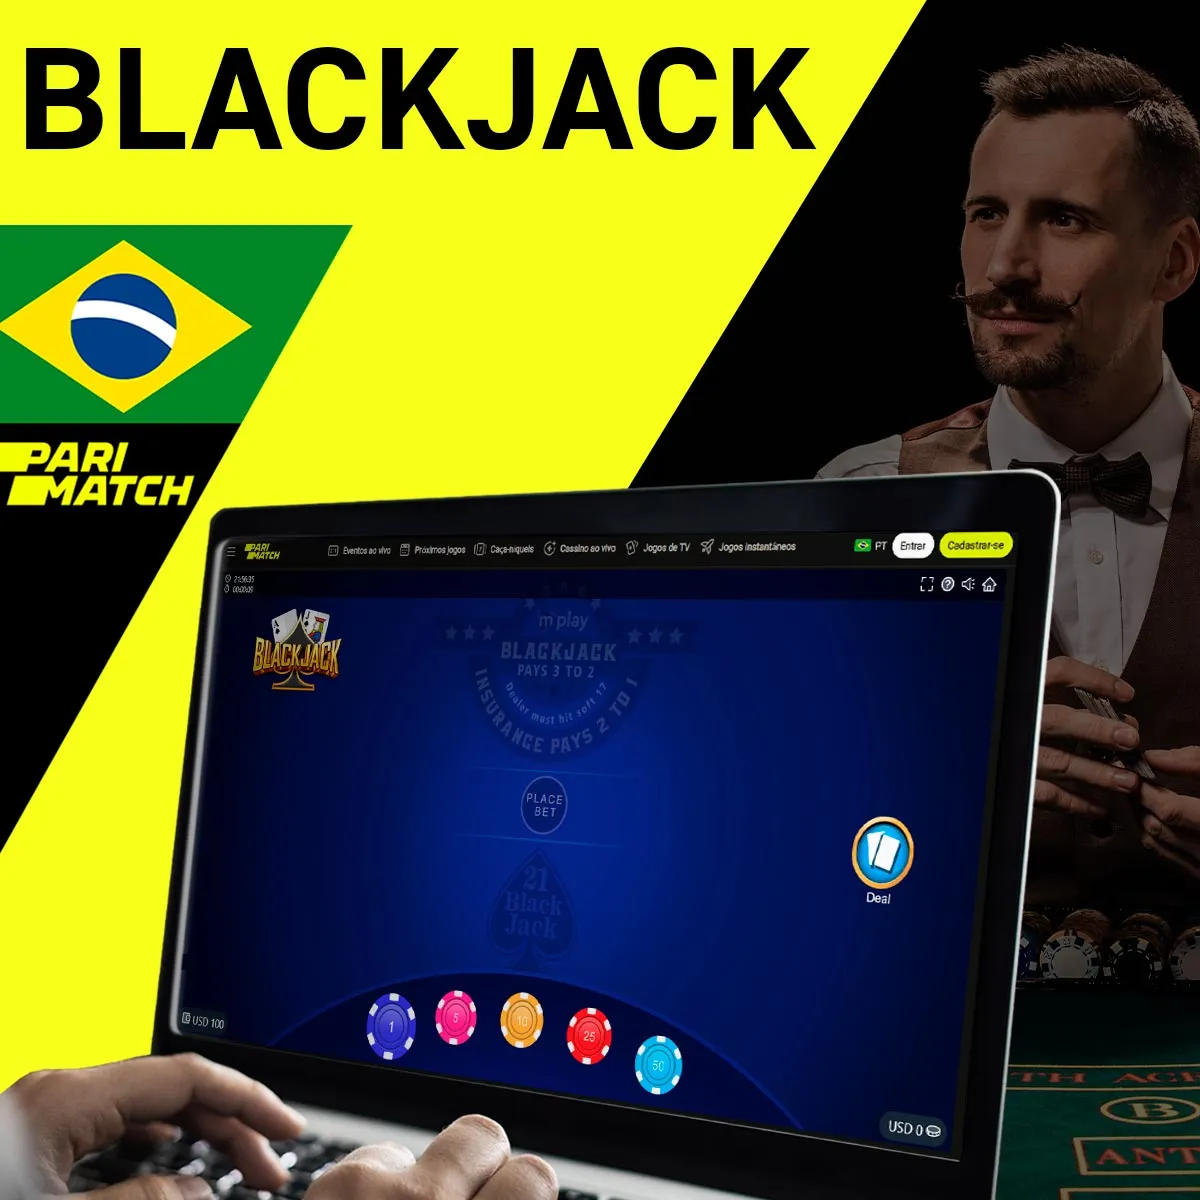 Blackjack de cassino na casa de apostas Parimatch no Brasil